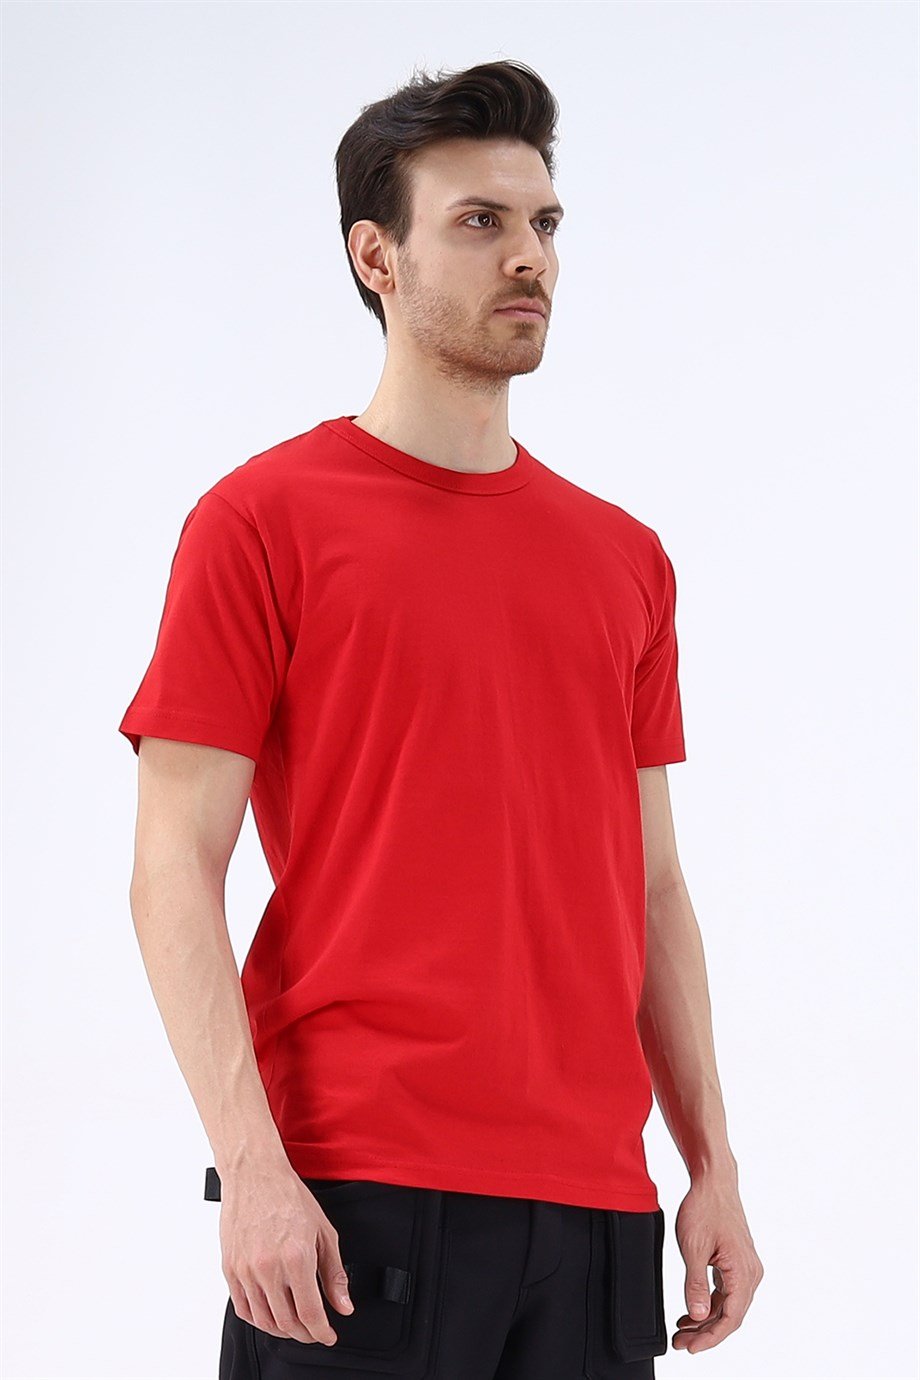 Regular Basic 0 Yaka T-Shirt Kırmızı, Alina (Konya İş Elbisesi, İstanbul İş  Elbisesi, Kocaeli İş Elbisesi, Gebze İş Elbisesi, Konya İş Kıyafetleri,  İstanbul İş Kıyafetleri, Kocaeli İş Kıyafetleri, Gebze İş Kıyafetleri,  Toptan